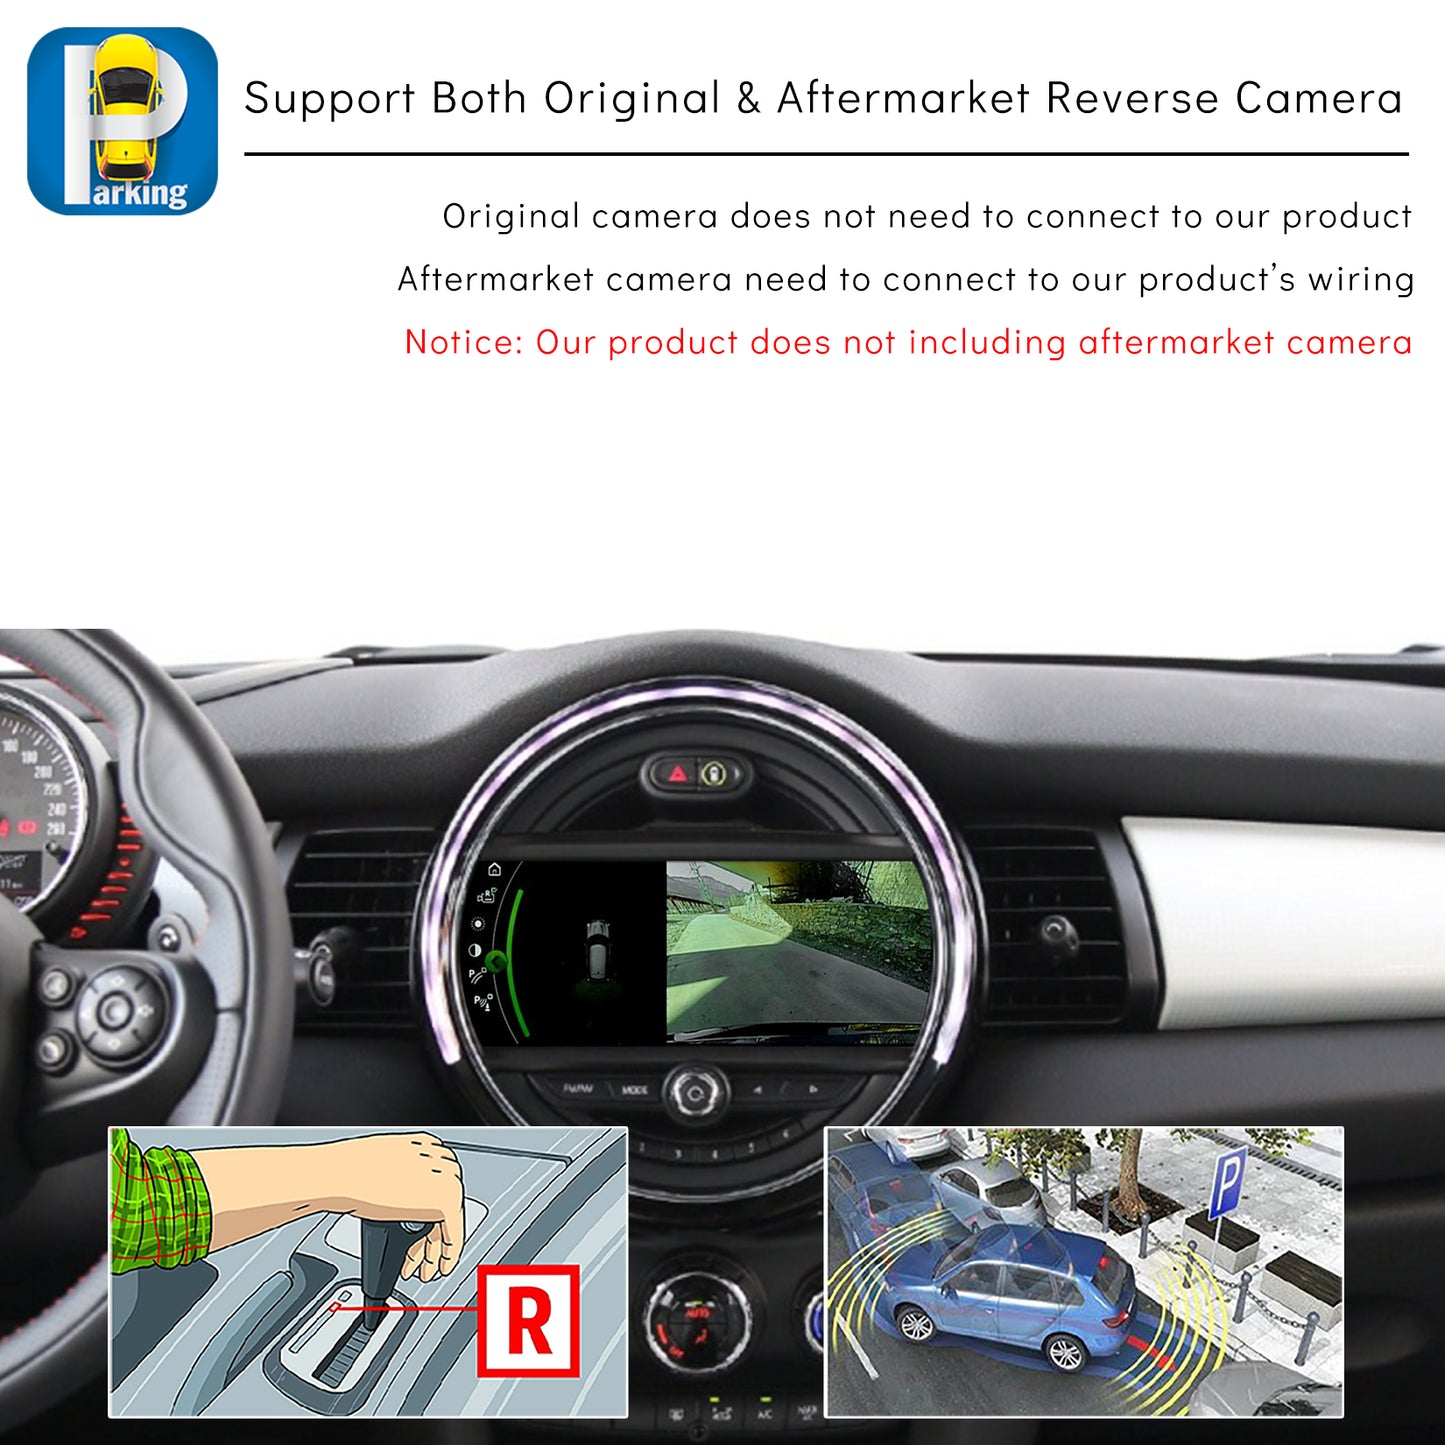 CarProKit for MINI Cooper Wireless CarPlay Android Auto Mirroring Retrofit Kit Support F54 F55 F56 F57 R58 R59 R60 R61 NBT System 2013-2017